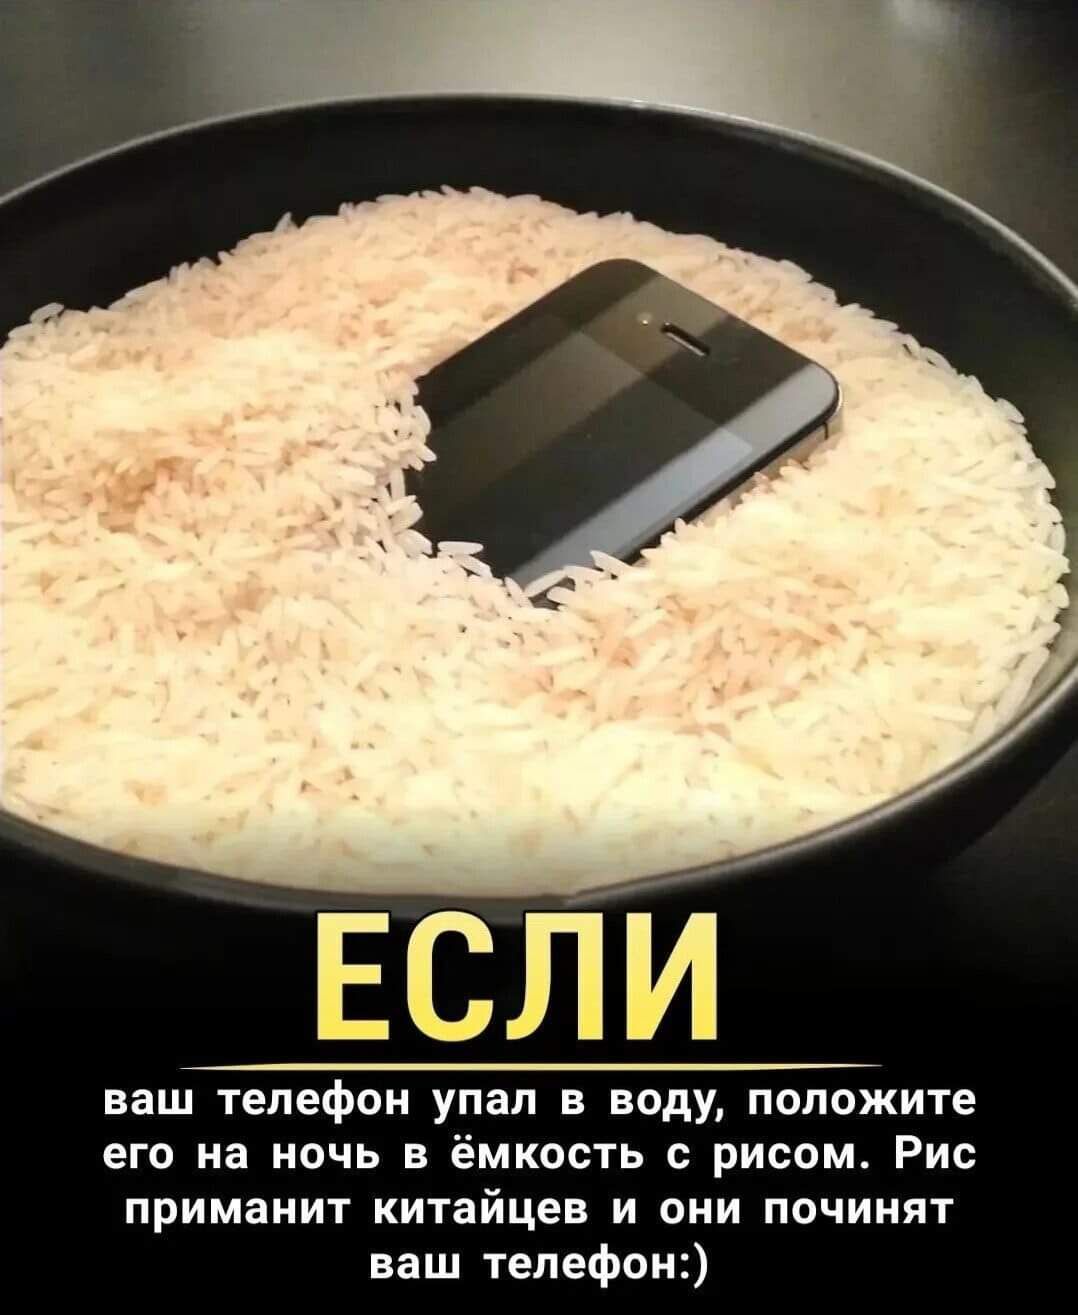 ЕСЛИ ваш телефон УПЗЛ В Воду положите его на ночь в ёмкость рисом Рис приманит китайцев и они починят ваш телефон